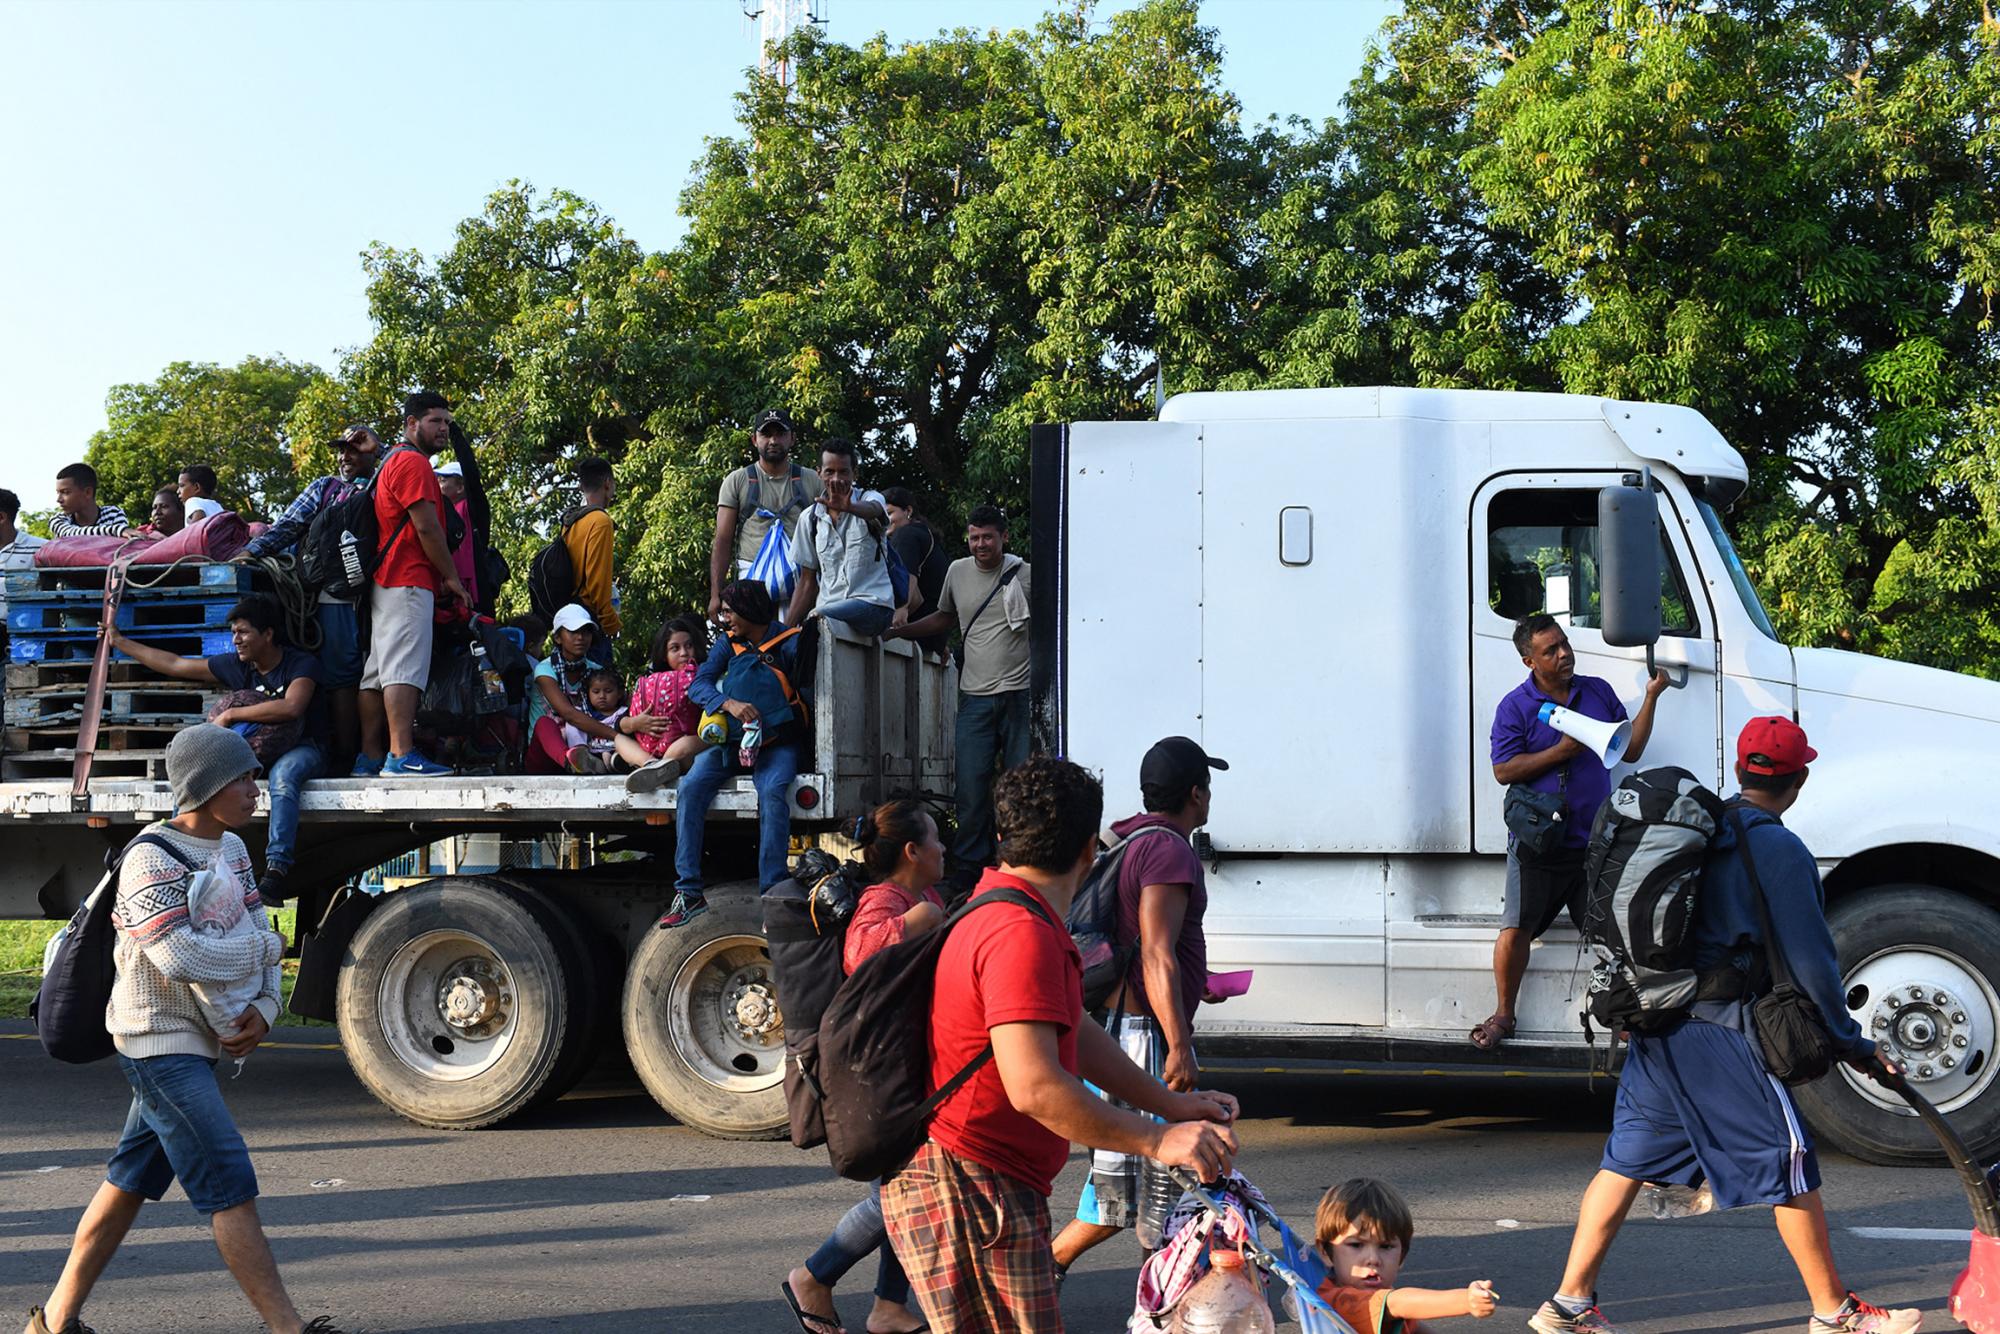 La caravana migrante avanza lentamente y con temor a las fuerzas de seguridad mexicanas.